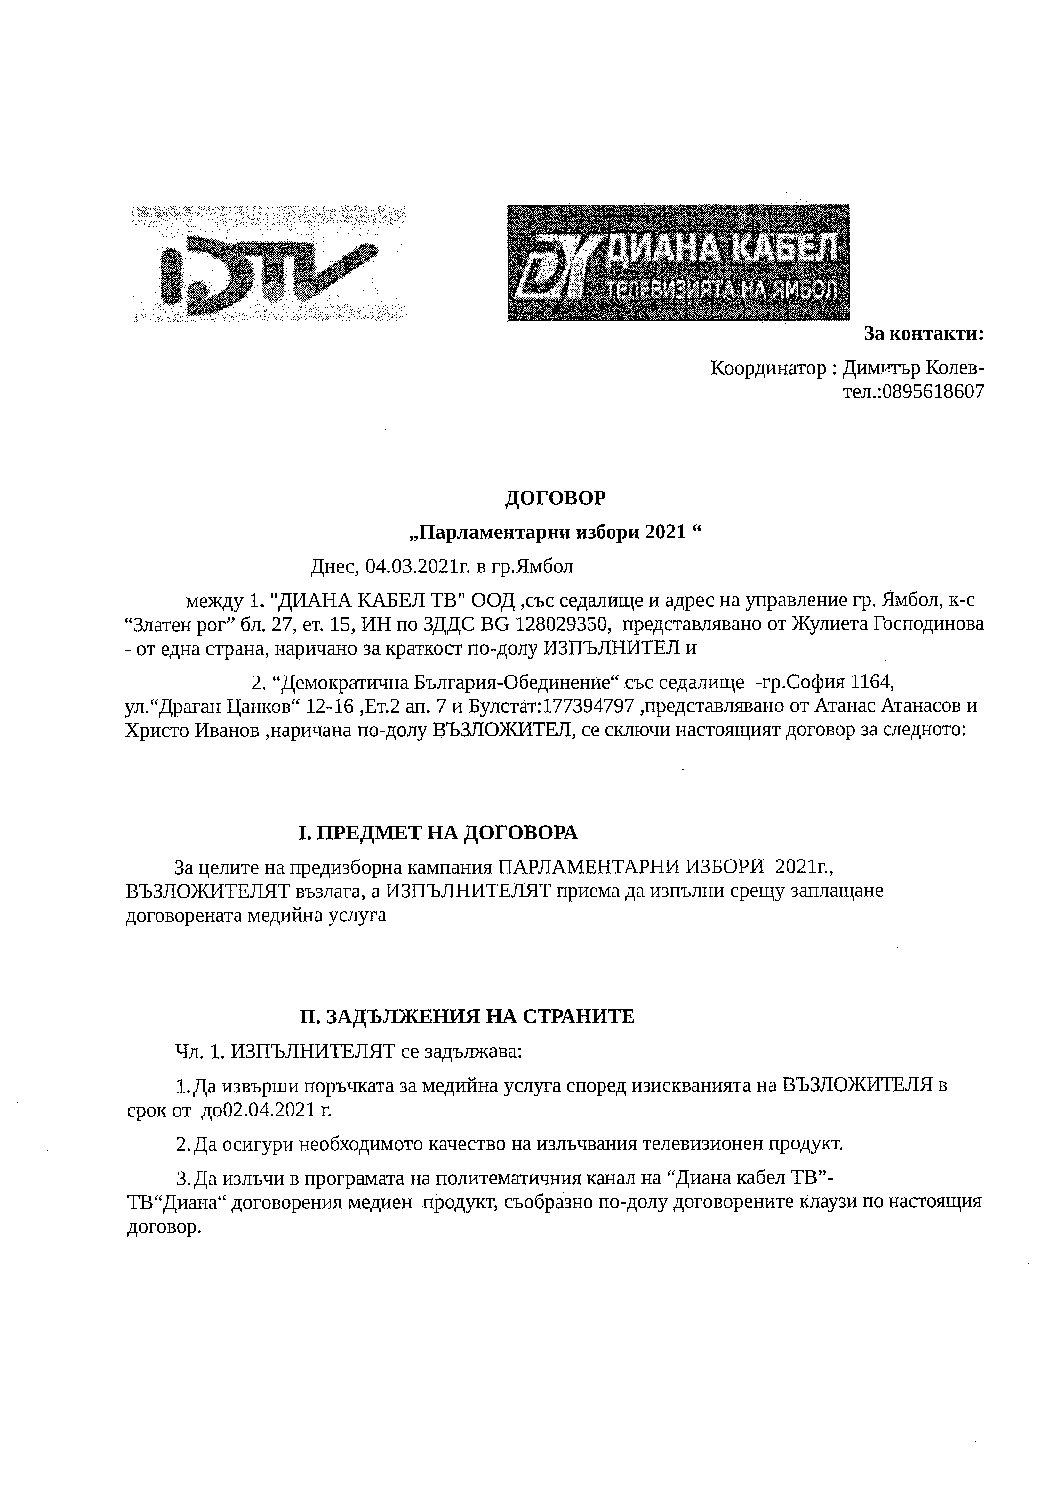 Парламентарни избори 2021-договор за доставка на медийни услуги с  Демократична  България  Обединение